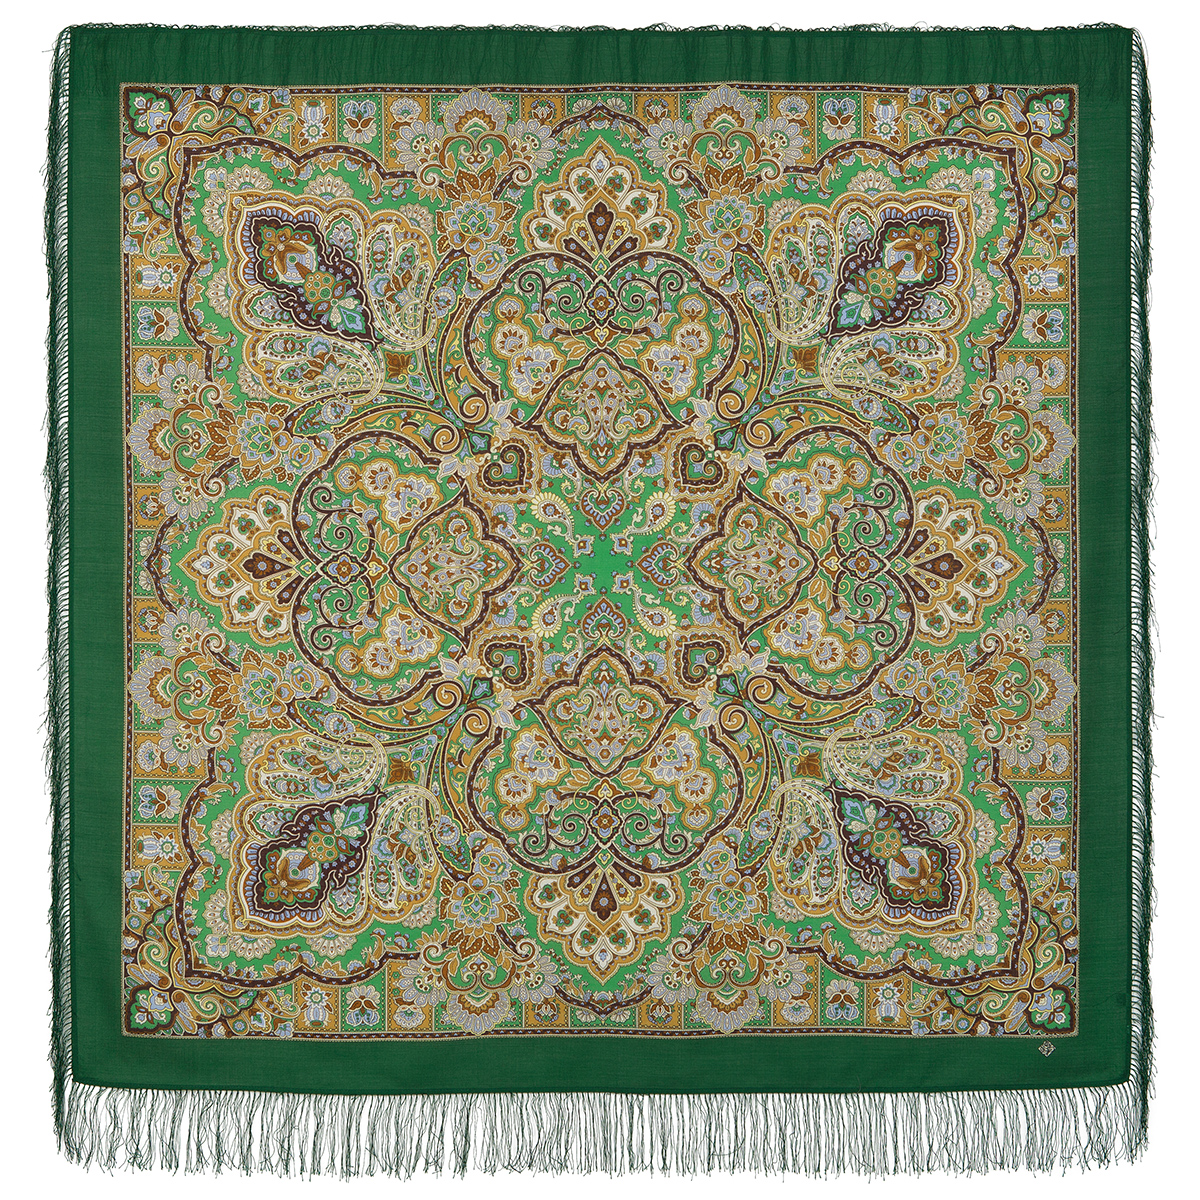 Платок женский Павловопосадский платок 1686 темно-зеленый/коричневый, 146х146 см